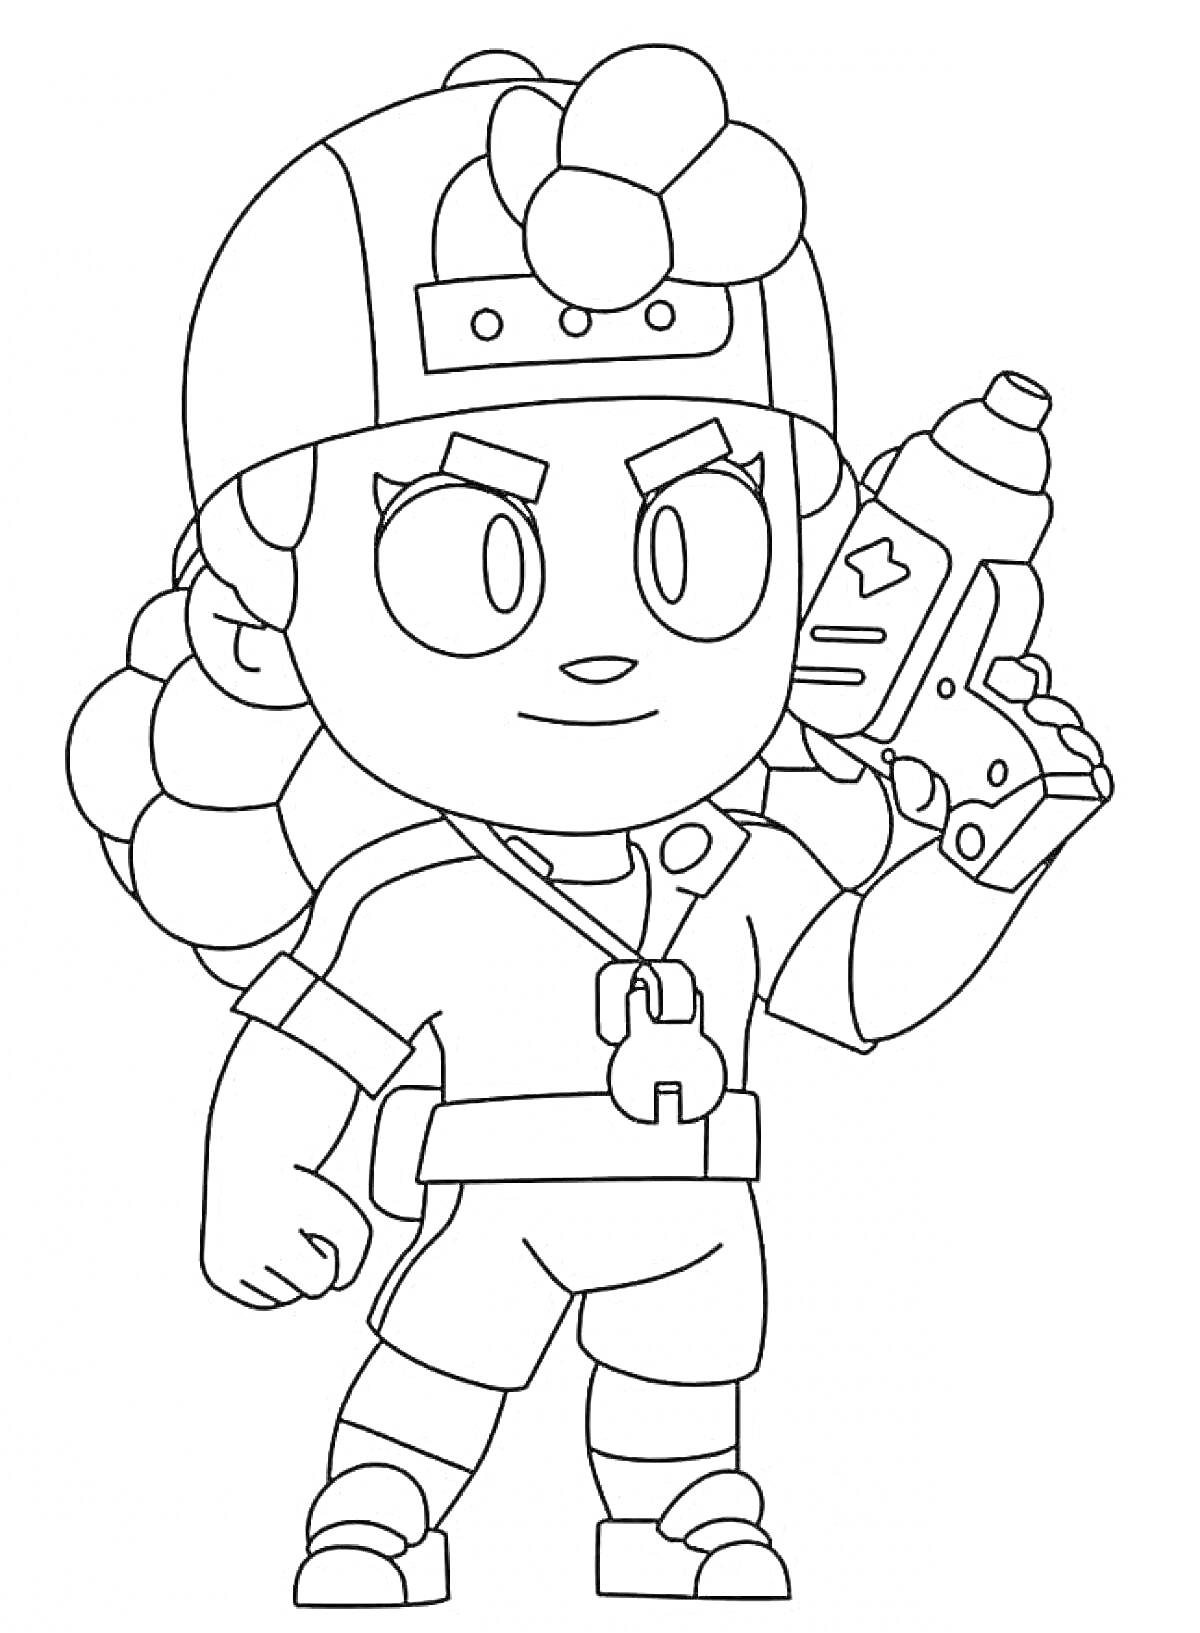 Раскраска Персонаж из игры Brawl Stars, Эдгар, с водяным пистолетом в руках